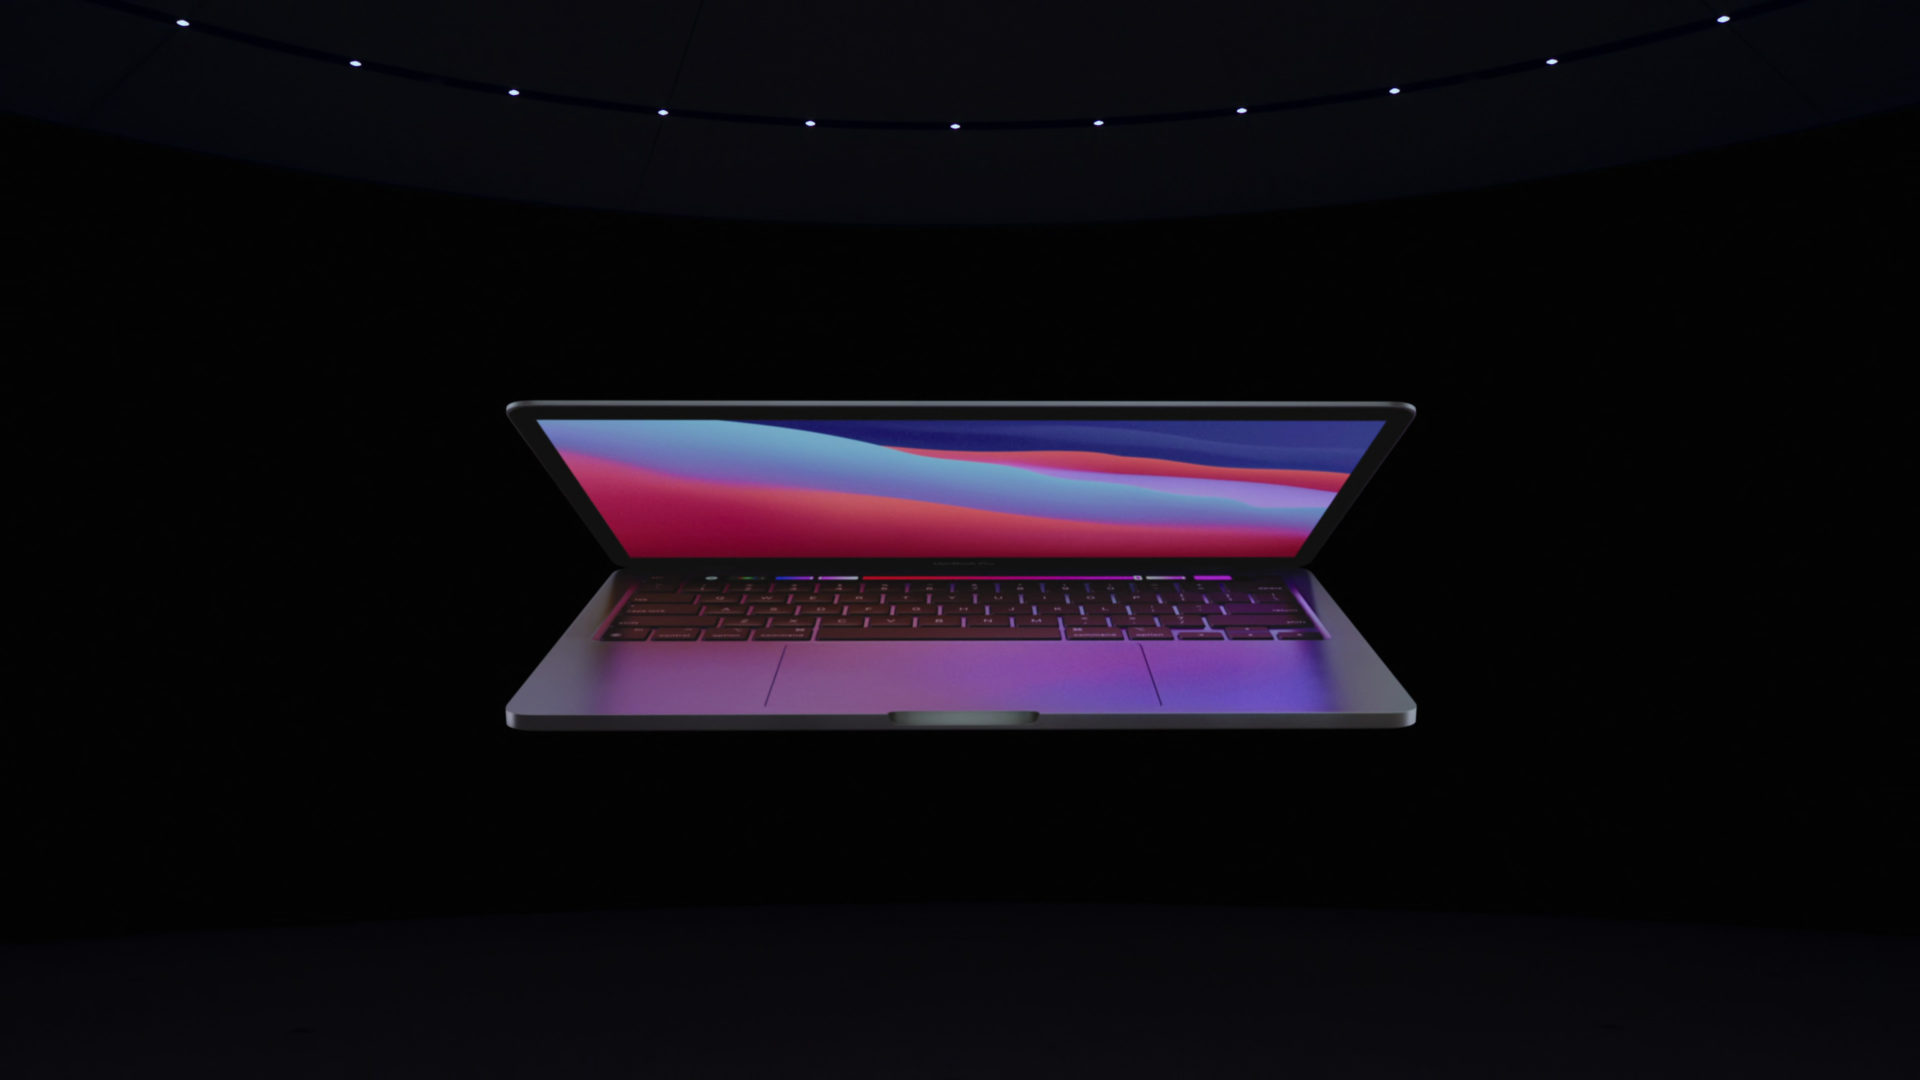 รอมานาน!! MacBook Pro รุ่นใหม่อาจอัปเกรดกล้องหน้า ความละเอียดคมชัด 1080p